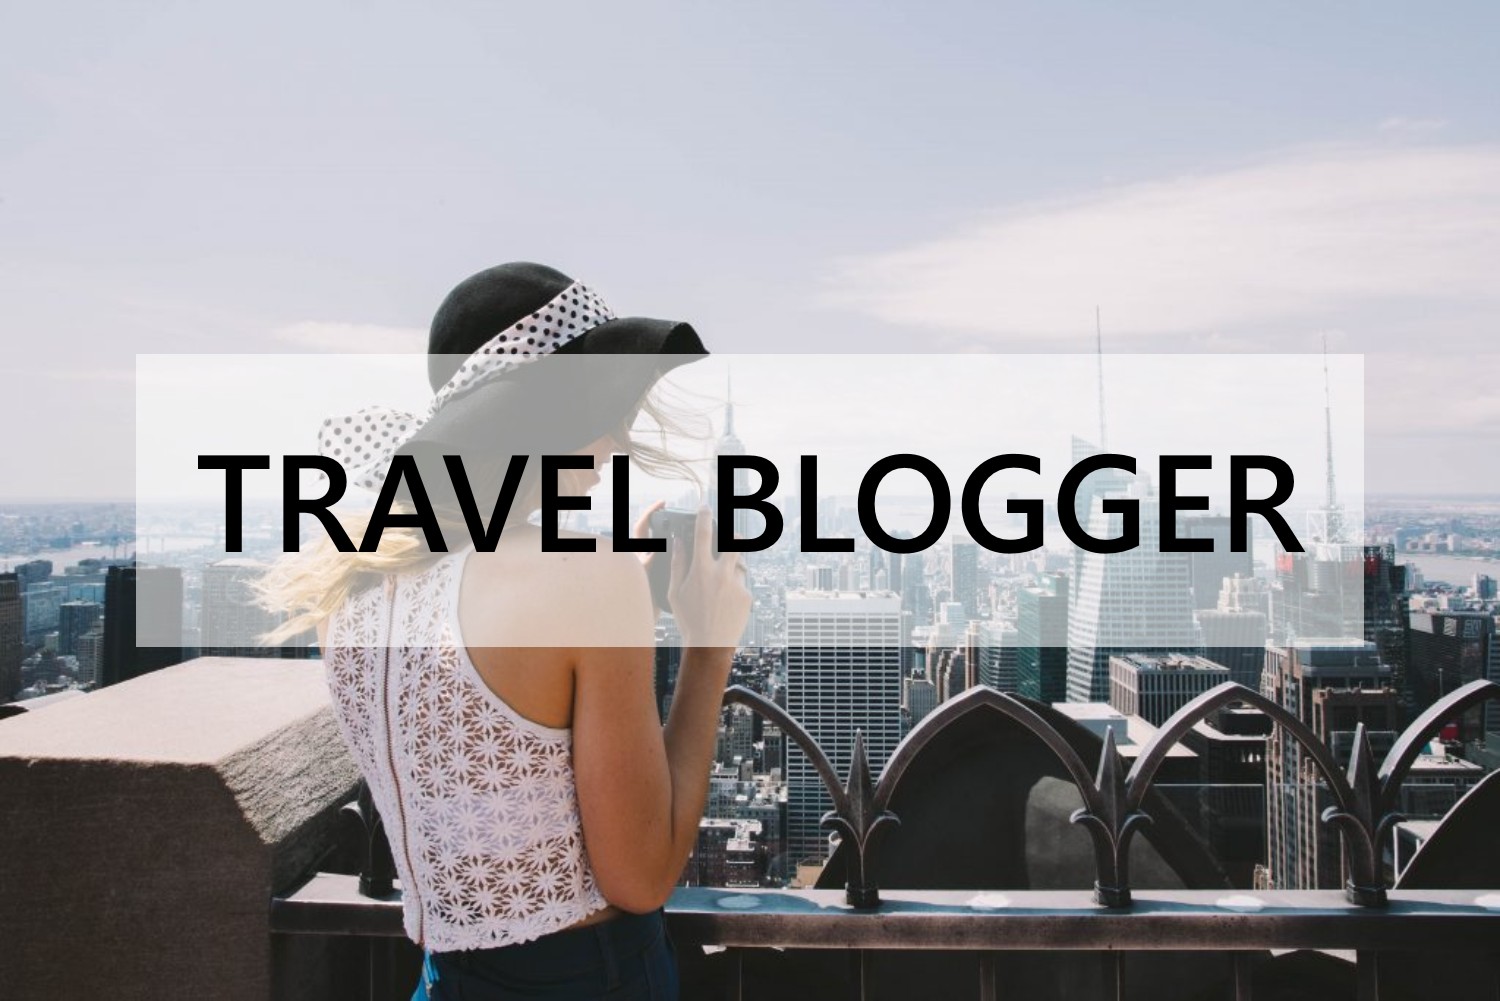 Travel Blogger thế hệ mới – Nghĩ rộng, làm lớn và đầy bản sắc